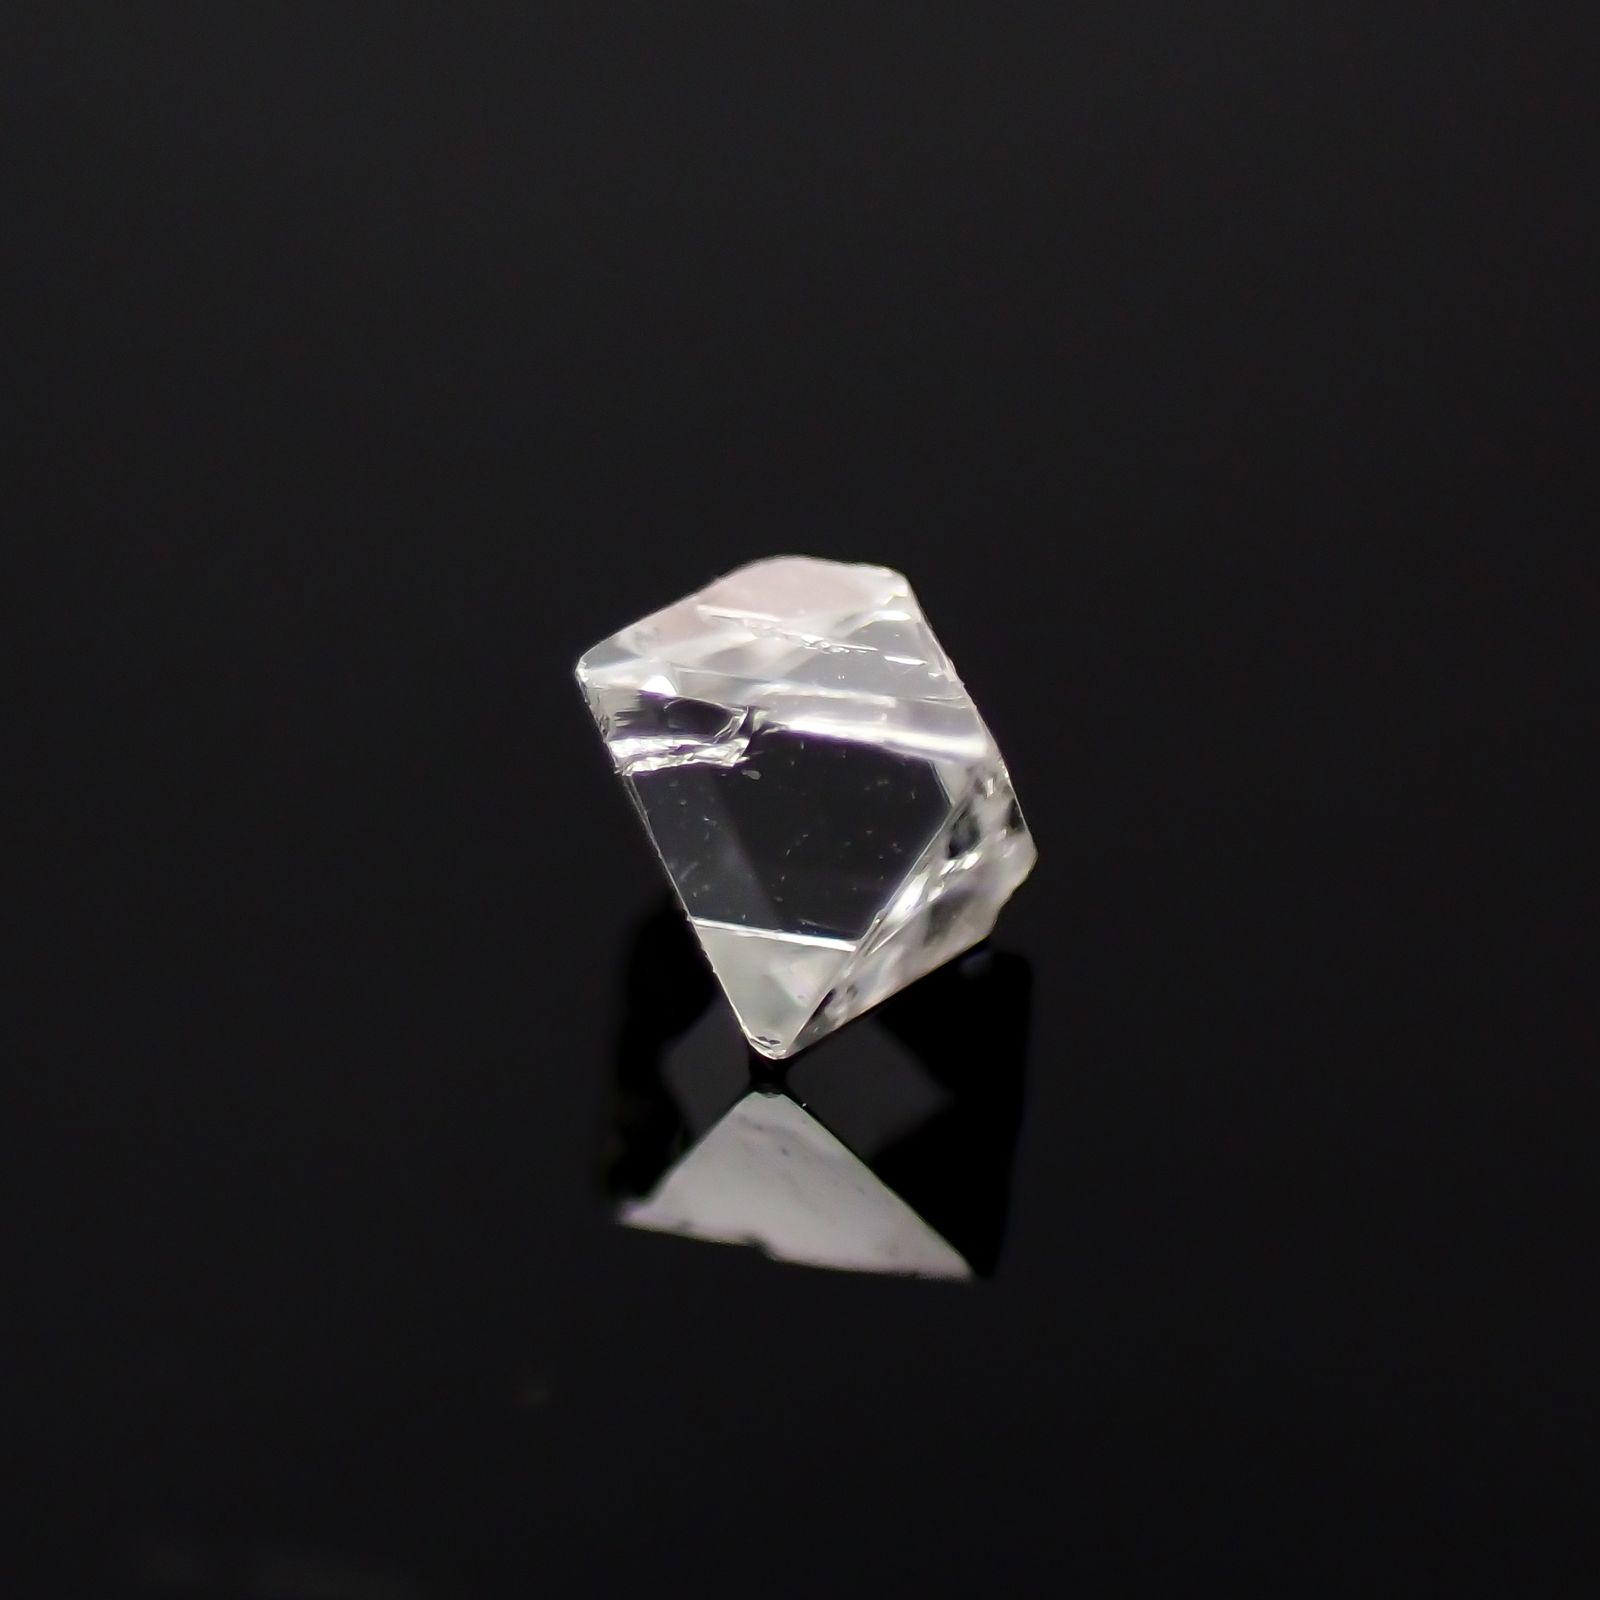 ソーヤブルダイヤモンド 原石 0.095ct[231023619]2.9x2.8mm前後 | TOP